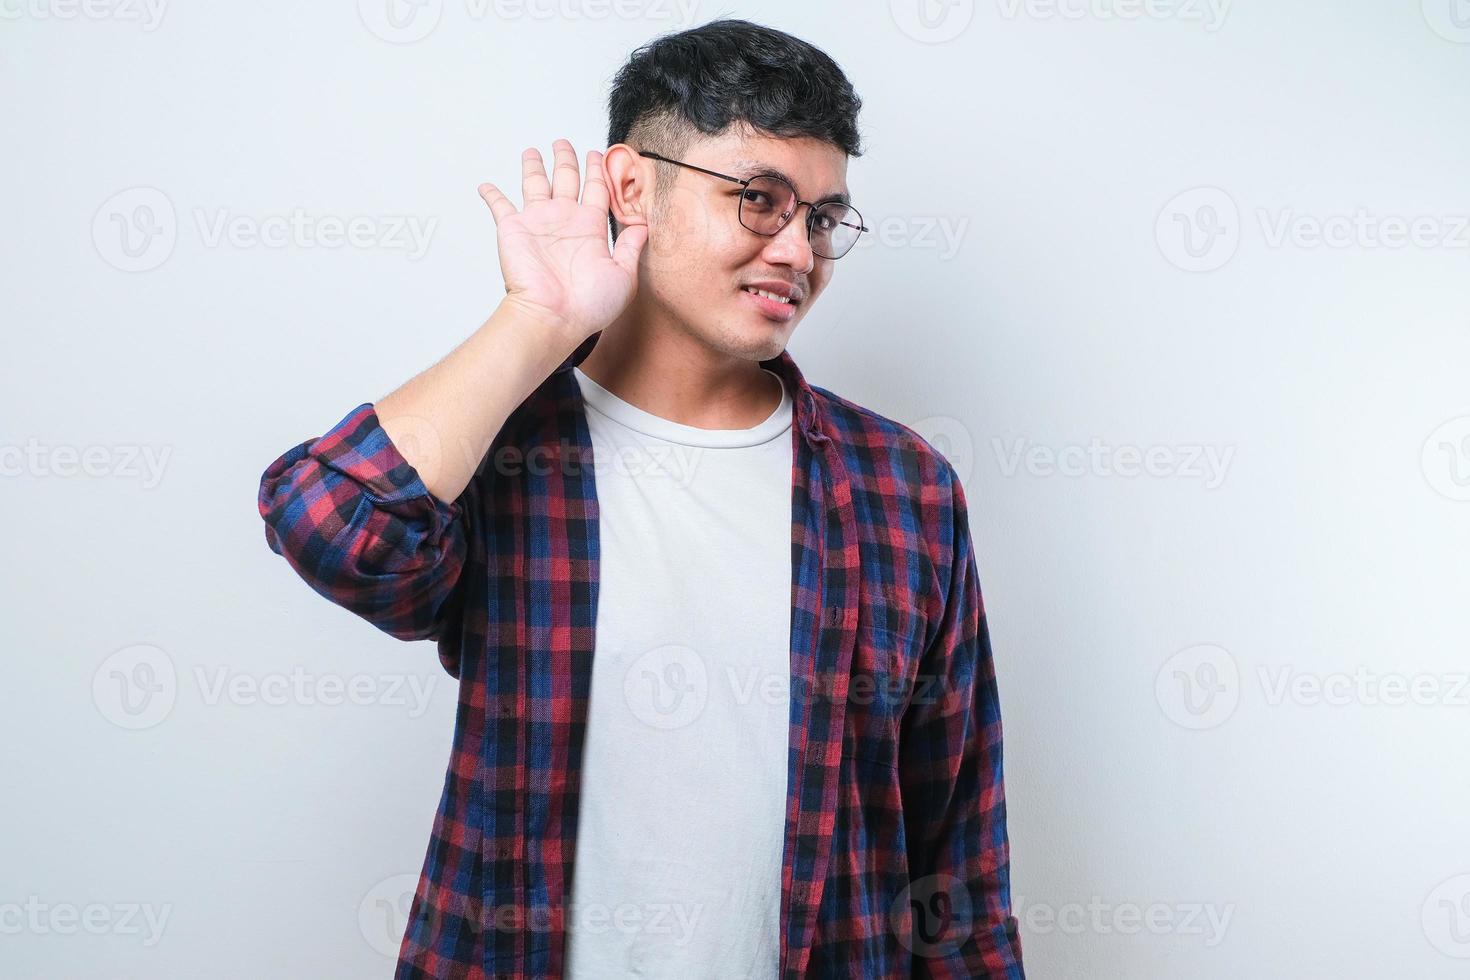 giovane uomo asiatico bello che sorride con la mano sull'orecchio ascoltando un'audizione per voci o pettegolezzi. concetto di sordità. foto